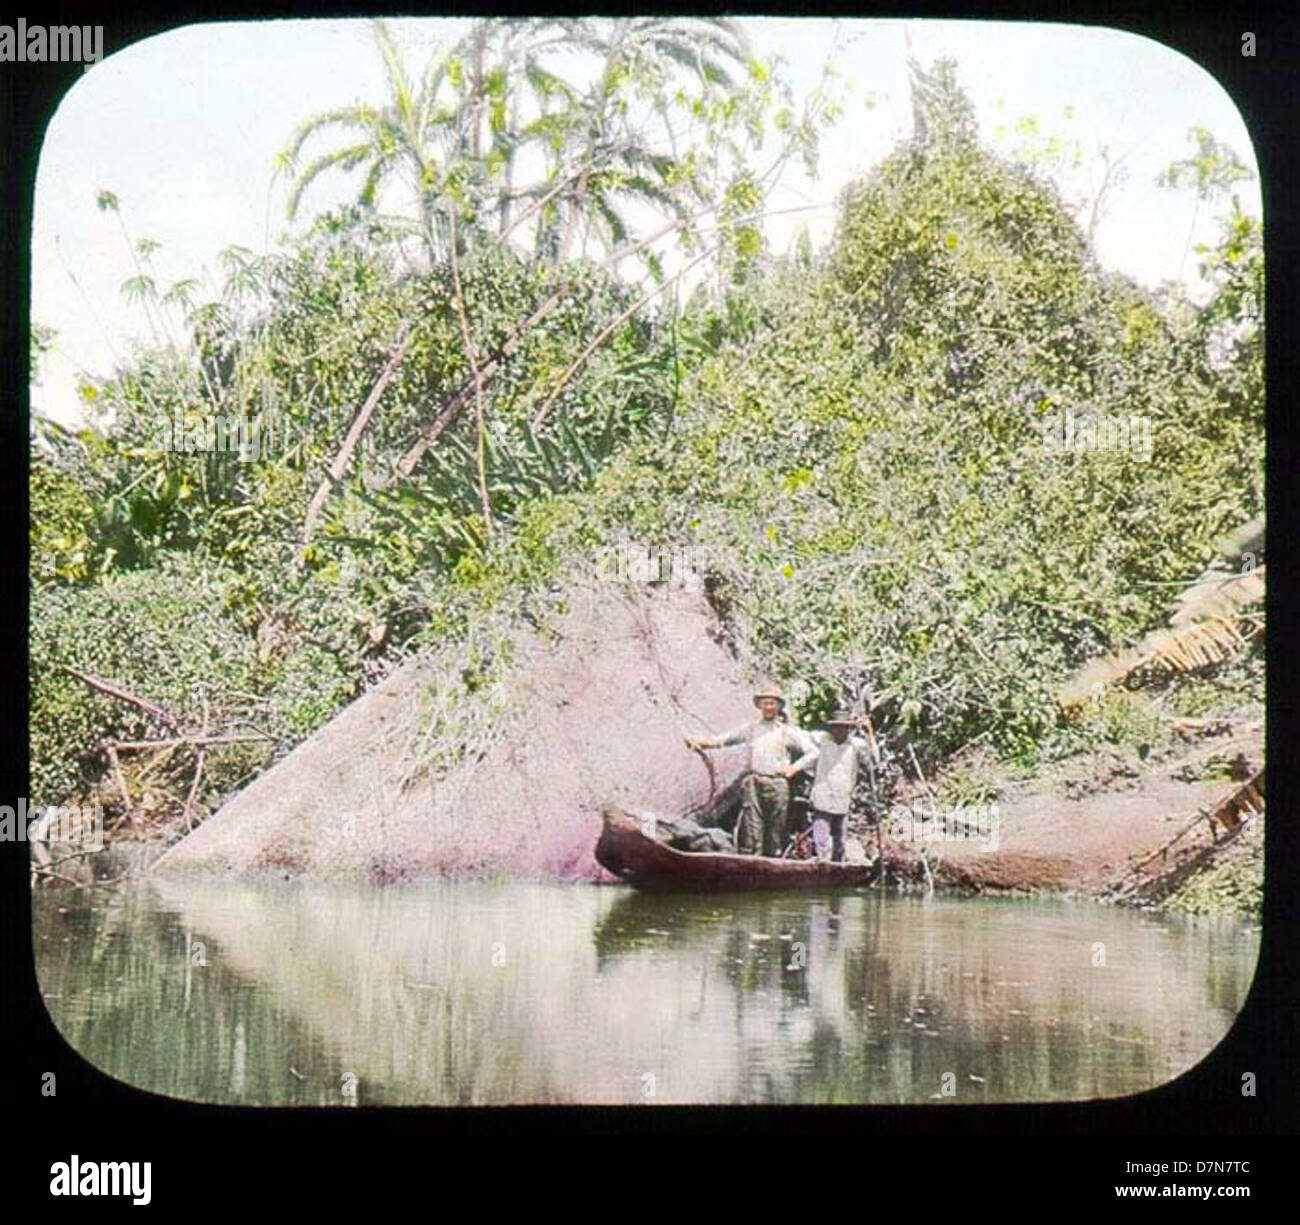 Gli uomini in barca sul fiume Foto Stock